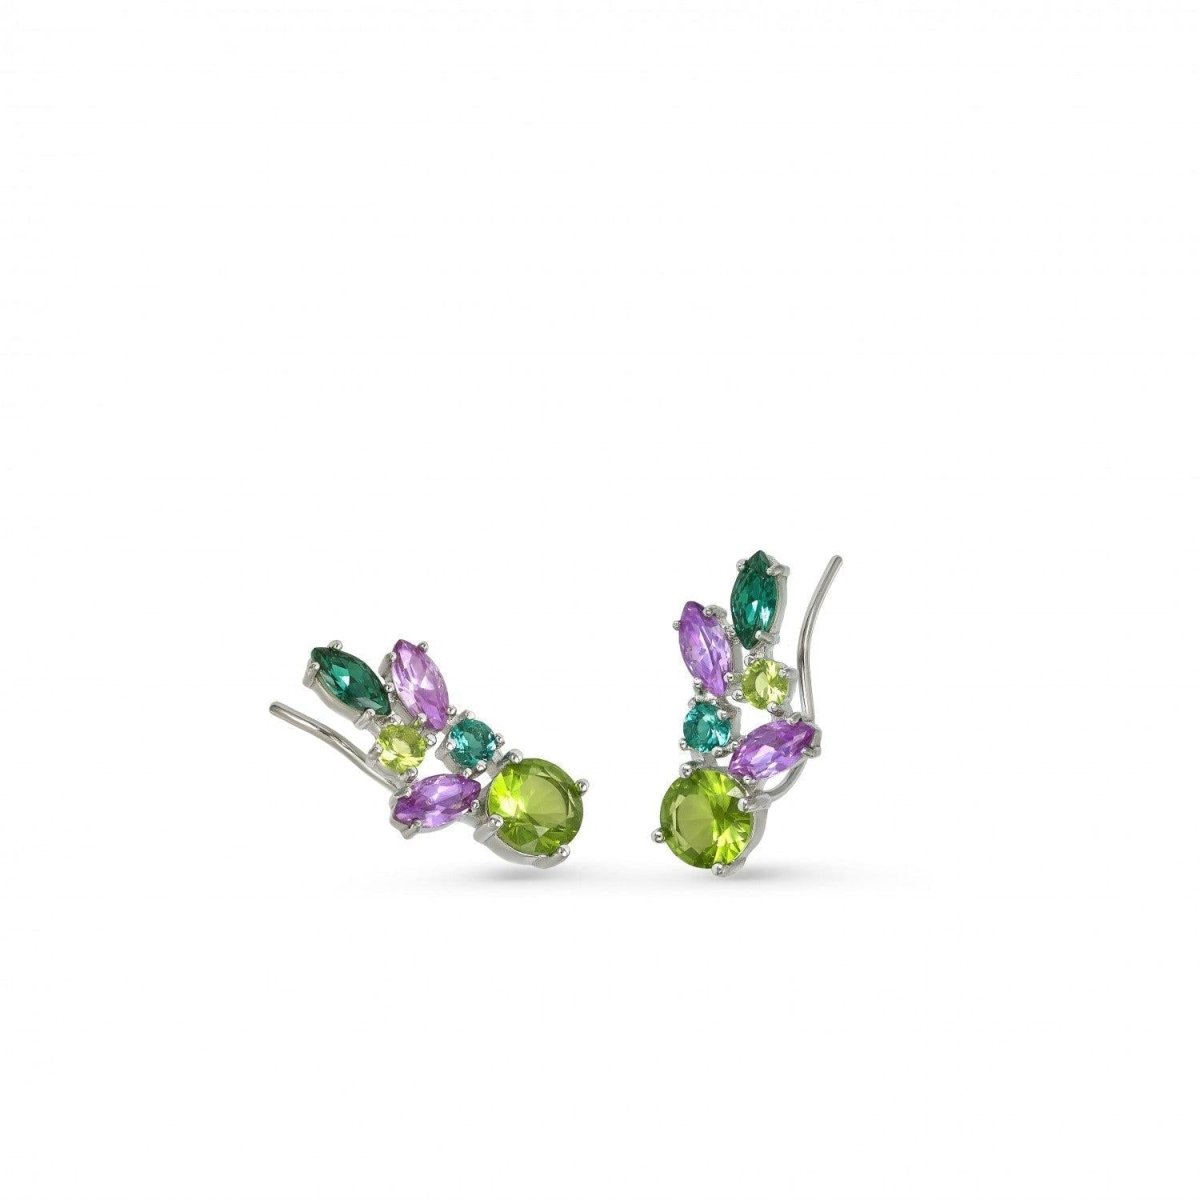 Earrings - Green leaf design silver climbing earrings